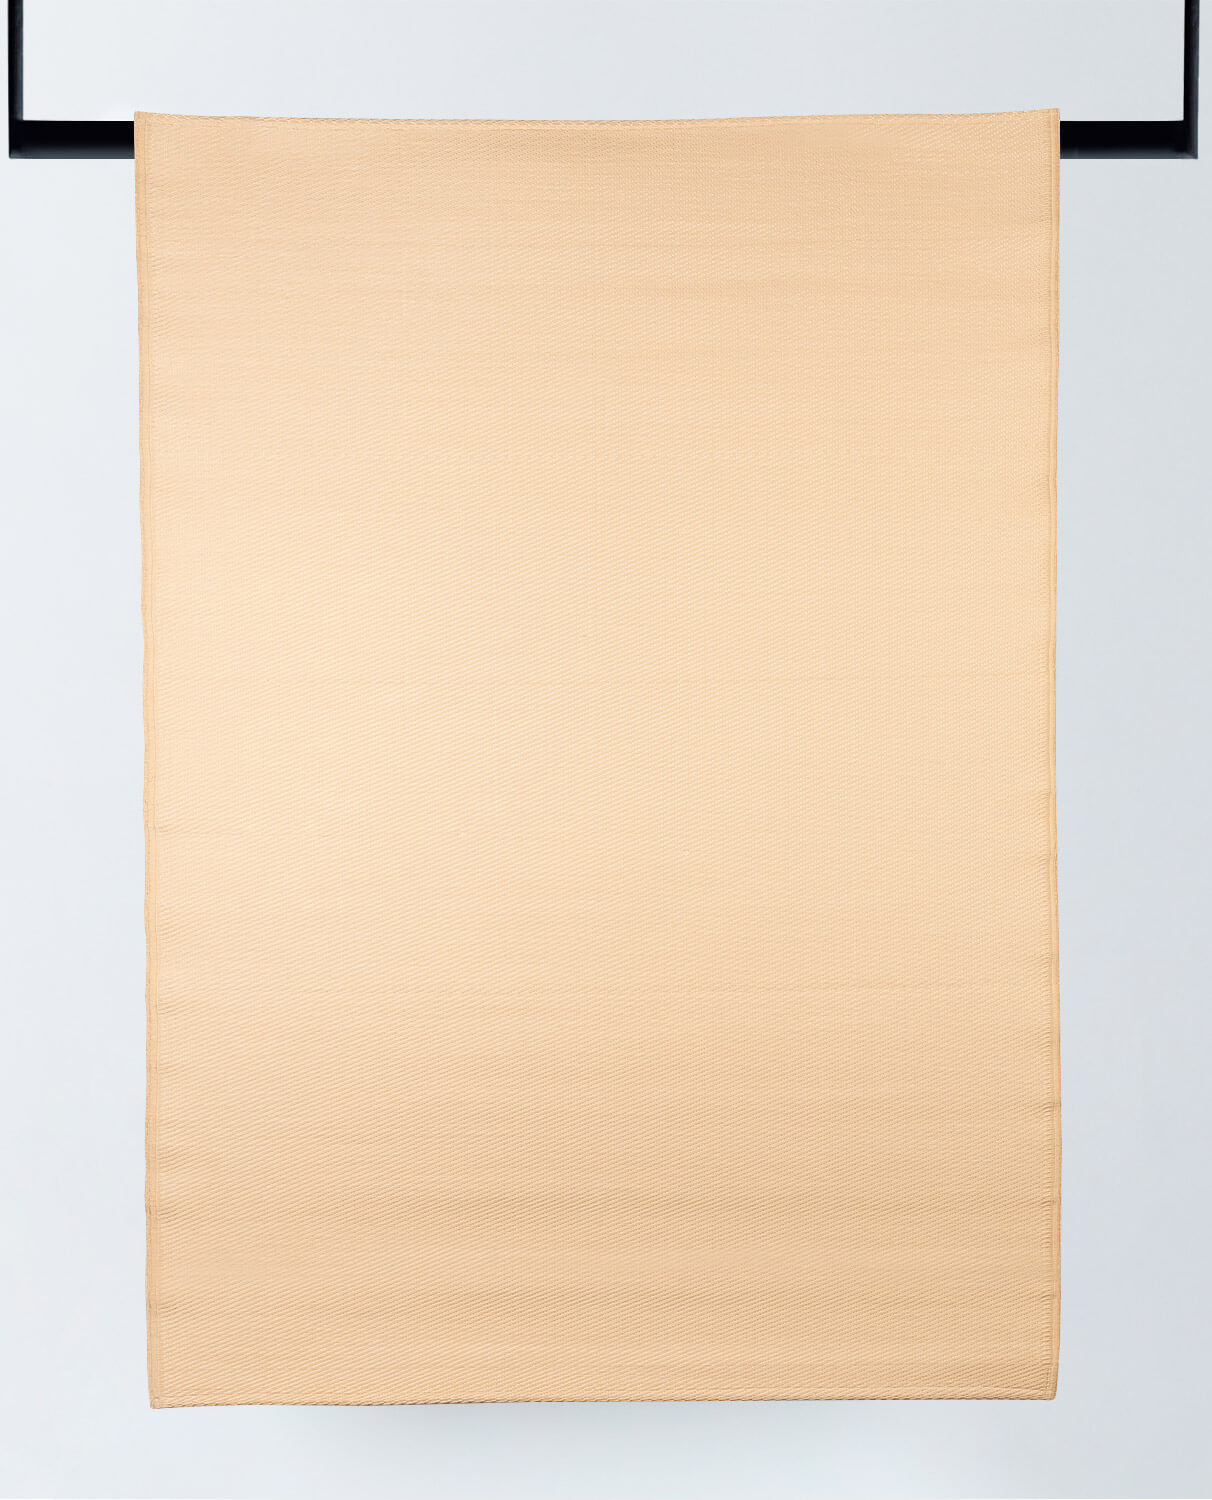 Tappeto per Esterni in Polipropilene (213x150 cm) Llevant, immagine della galleria 1